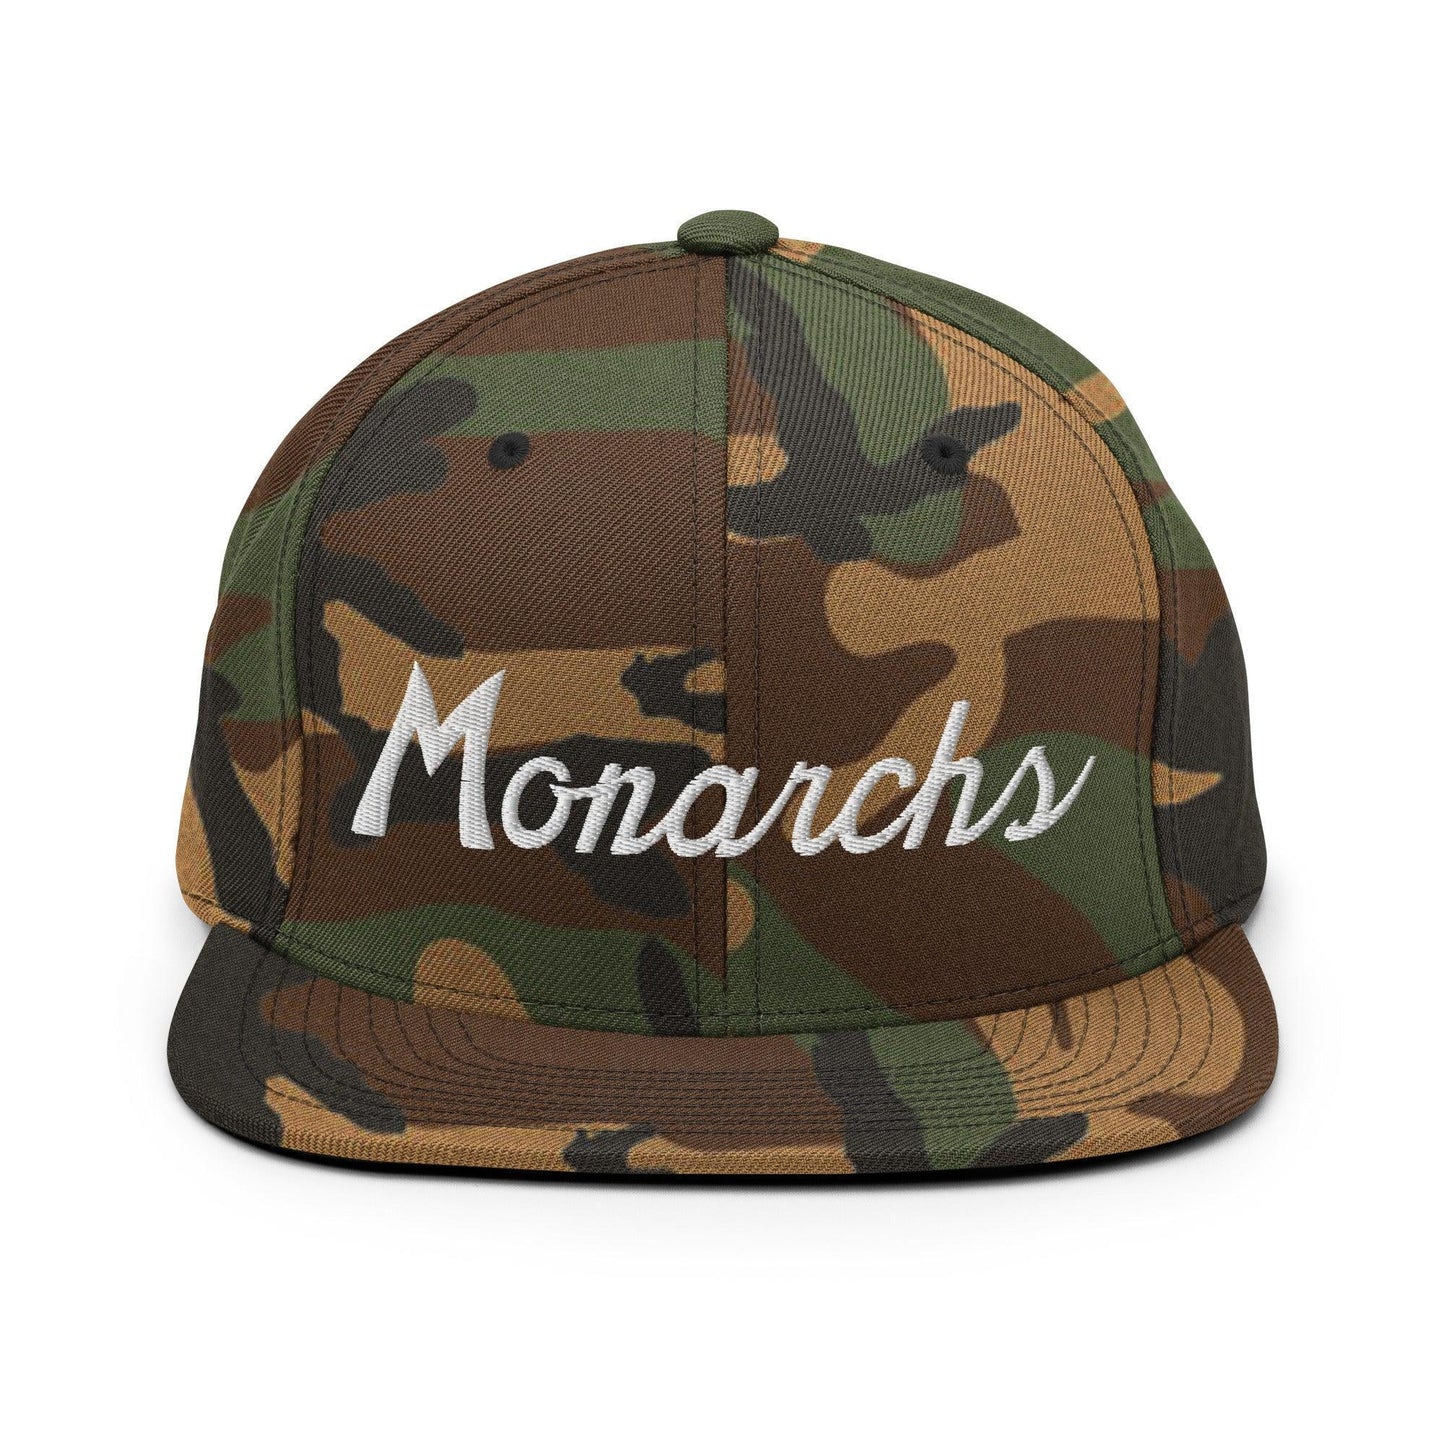 Monarchs School Mascot Script Snapback Hat Green Camo